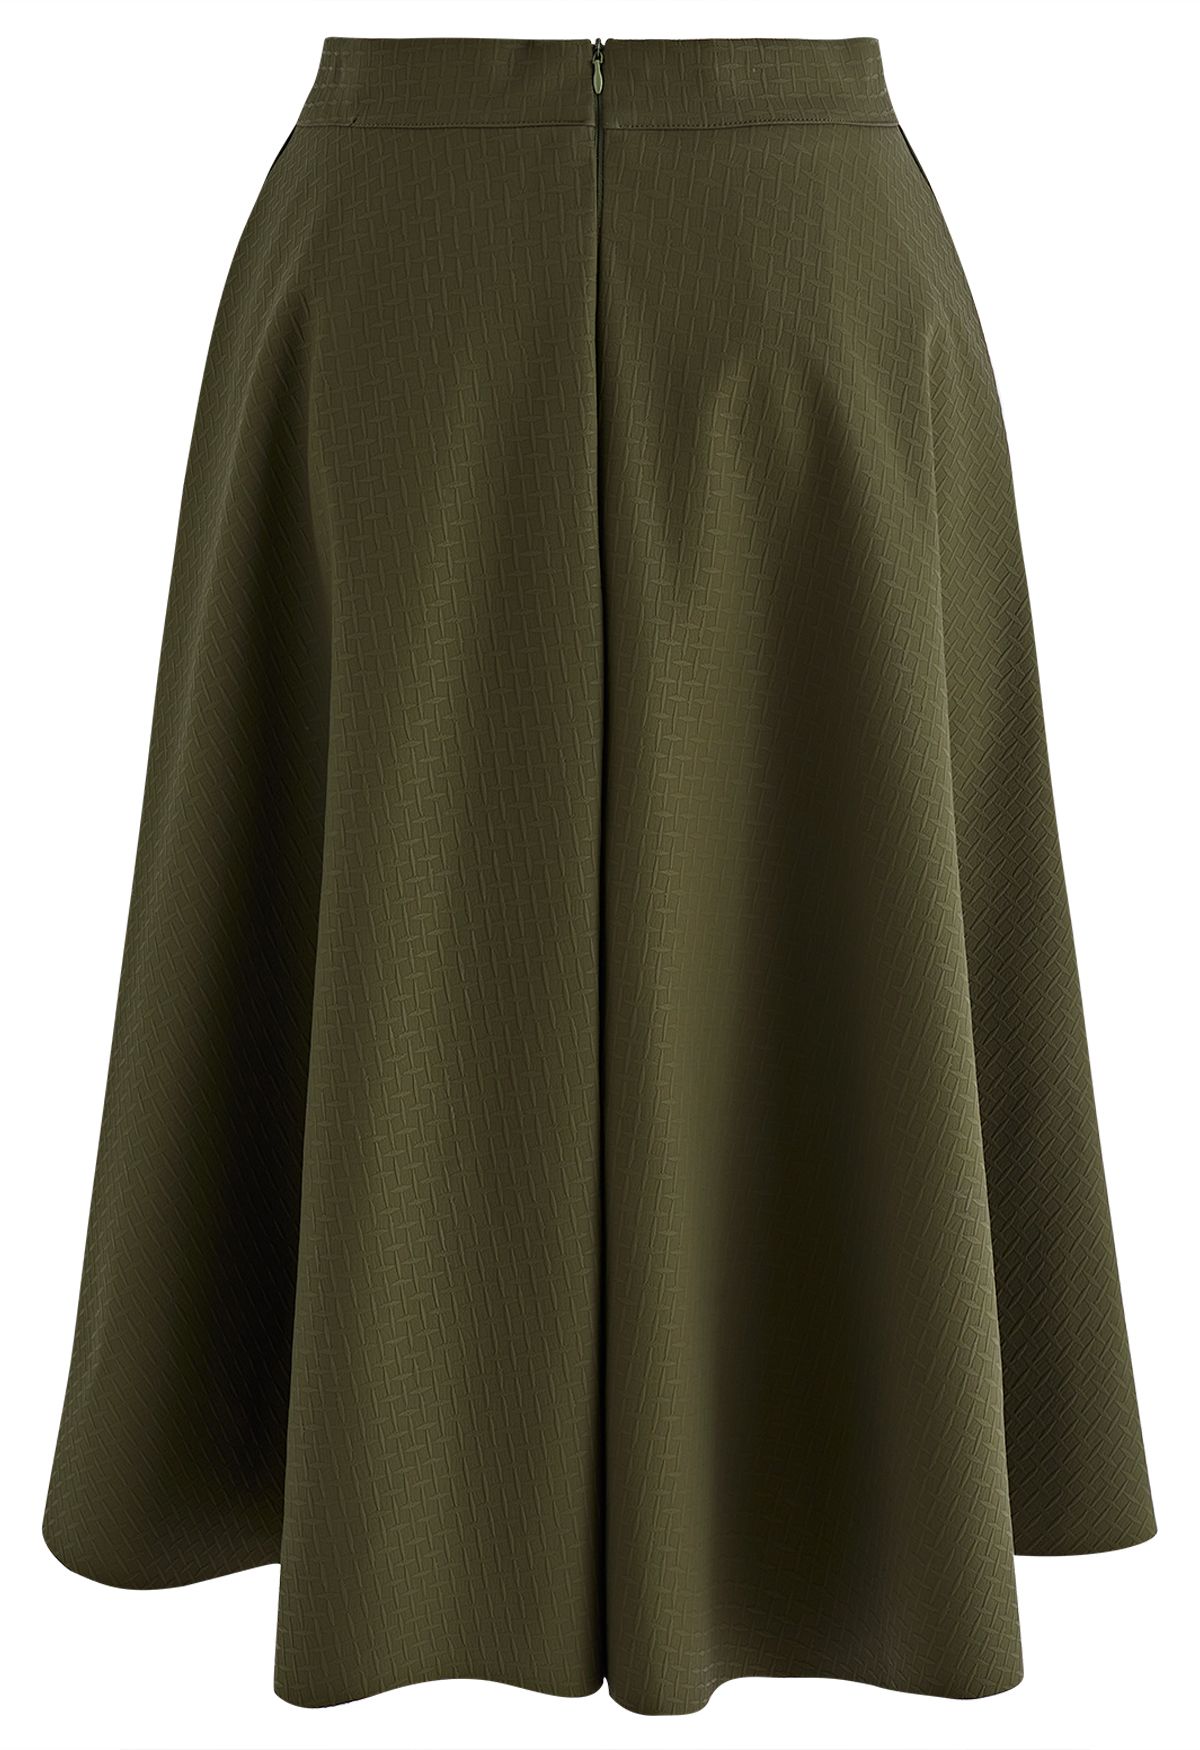 Falda midi verde militar de piel sintética con textura